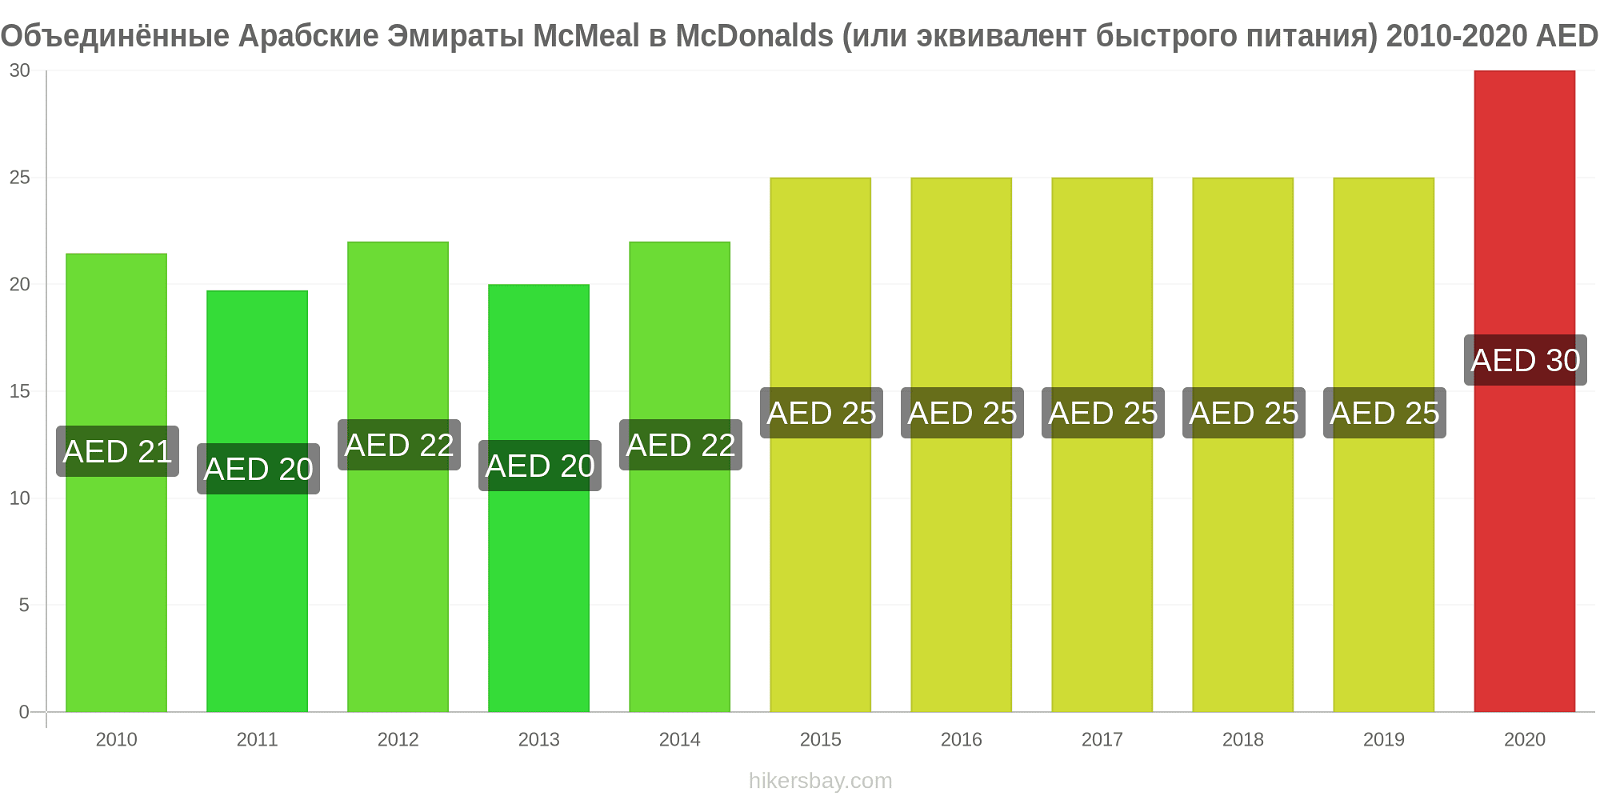 Объединённые Арабские Эмираты изменения цен McMeal в McDonalds (или эквивалент быстрого питания) hikersbay.com